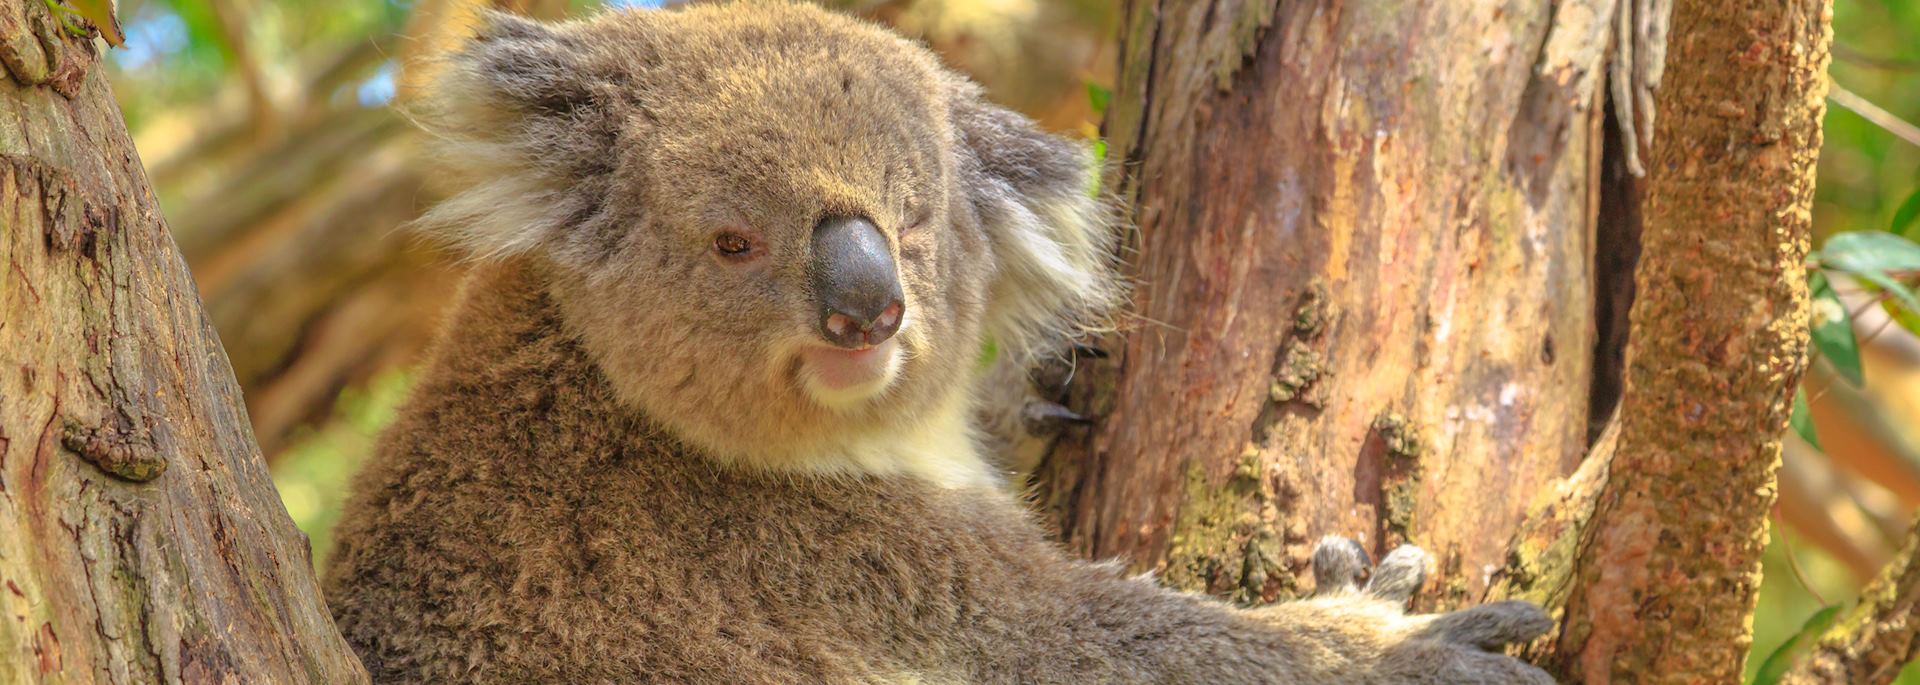 Koala, Phillip Island